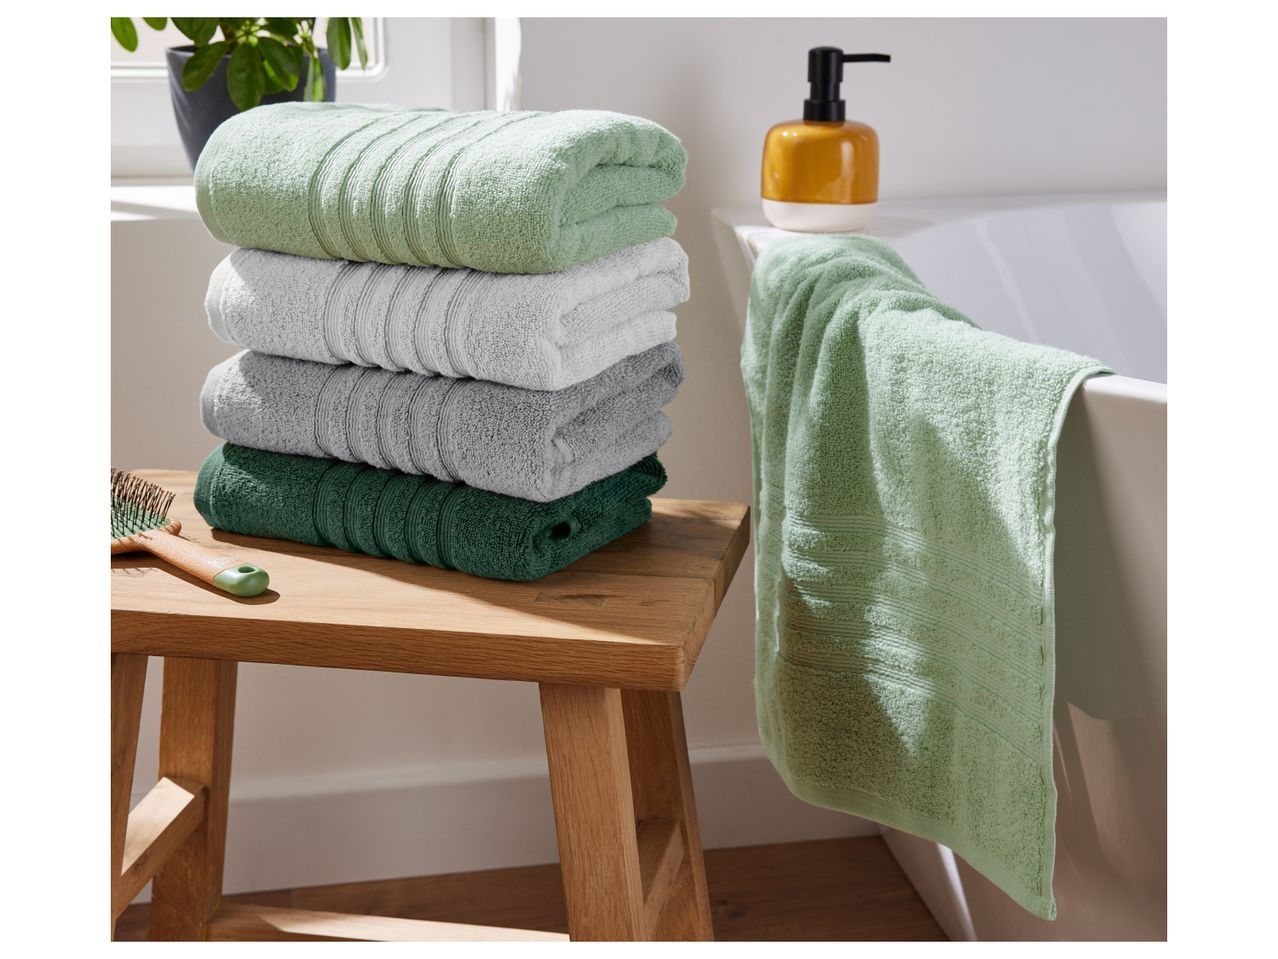 Asciugamano , prezzo 6,99 EUR 
Asciugamano 50x100 cm, 2 pezzi 
- Puro cotone
- 500 ...